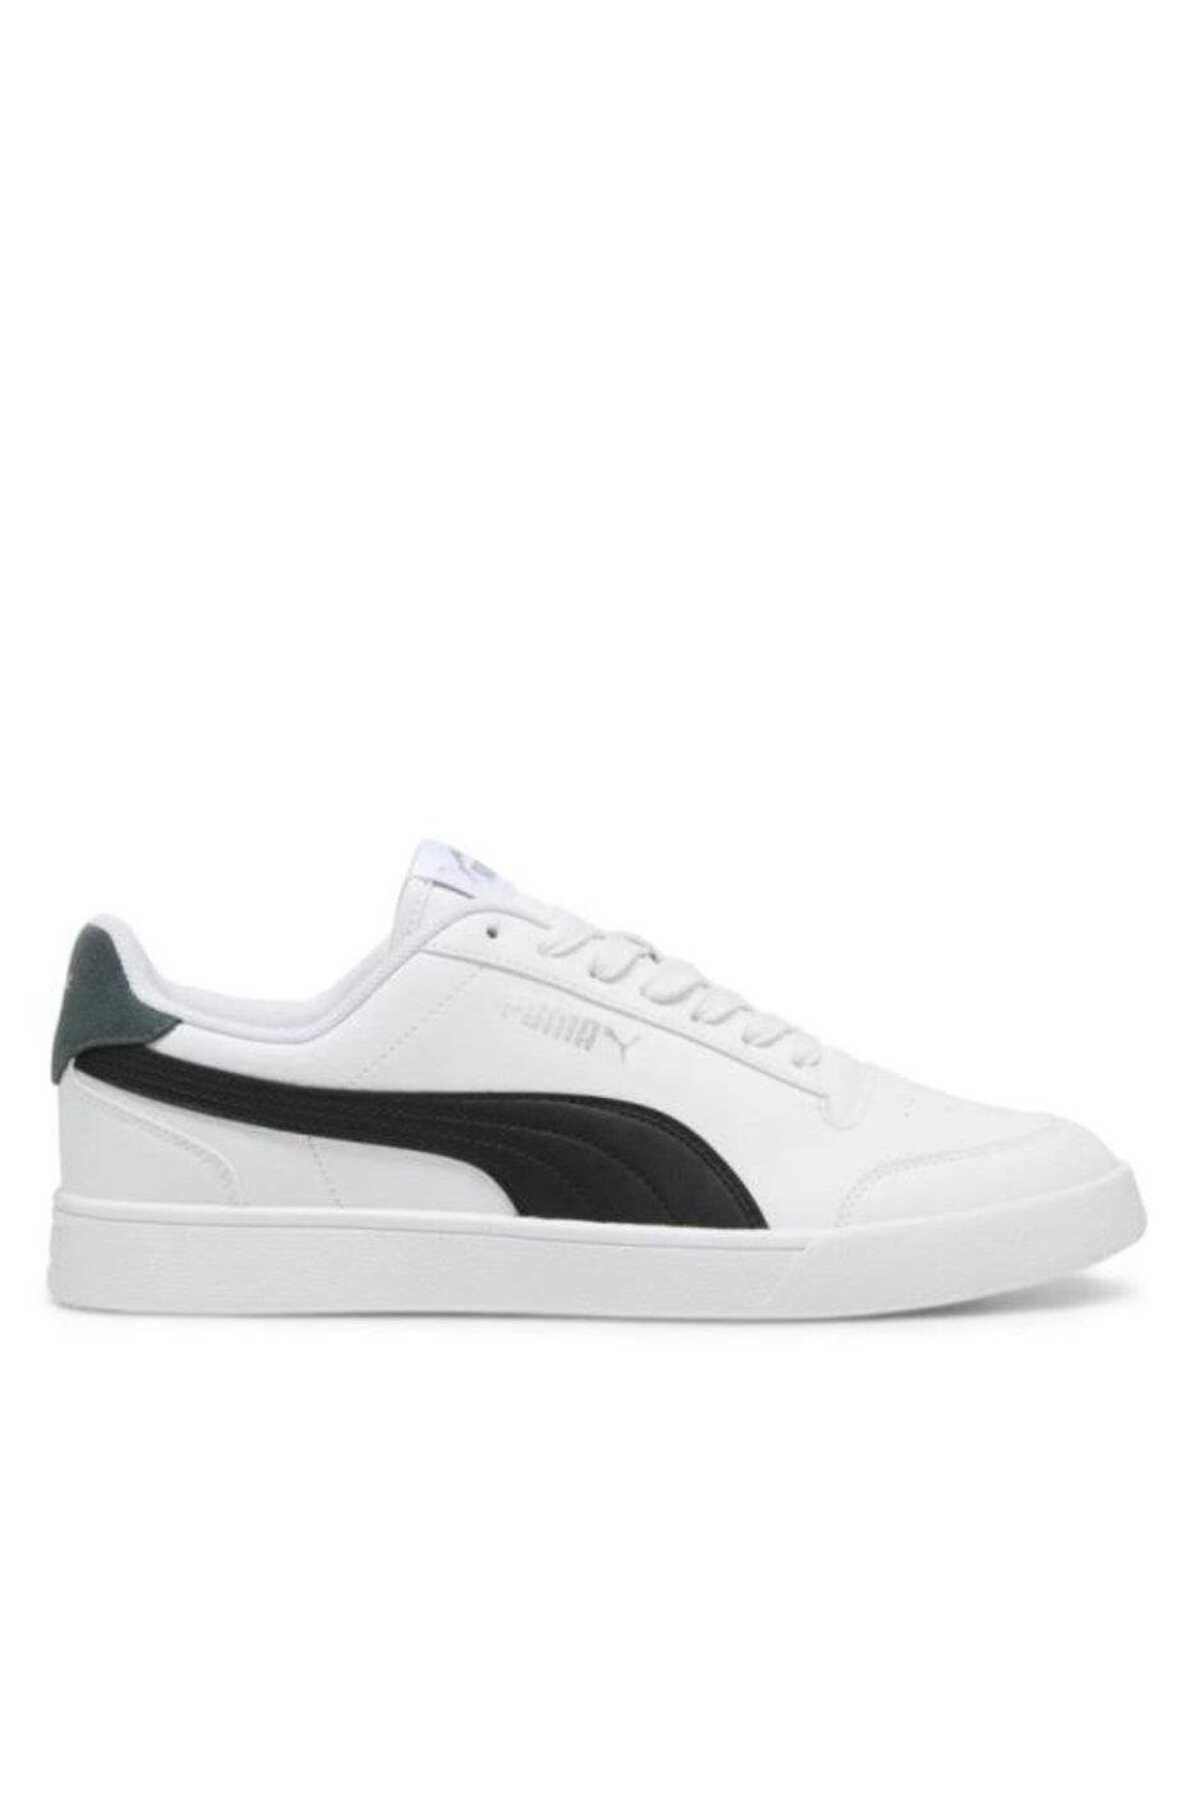 Puma - Puma Shuffle Erkek Sneaker Ayakkabı Beyaz / Siyah